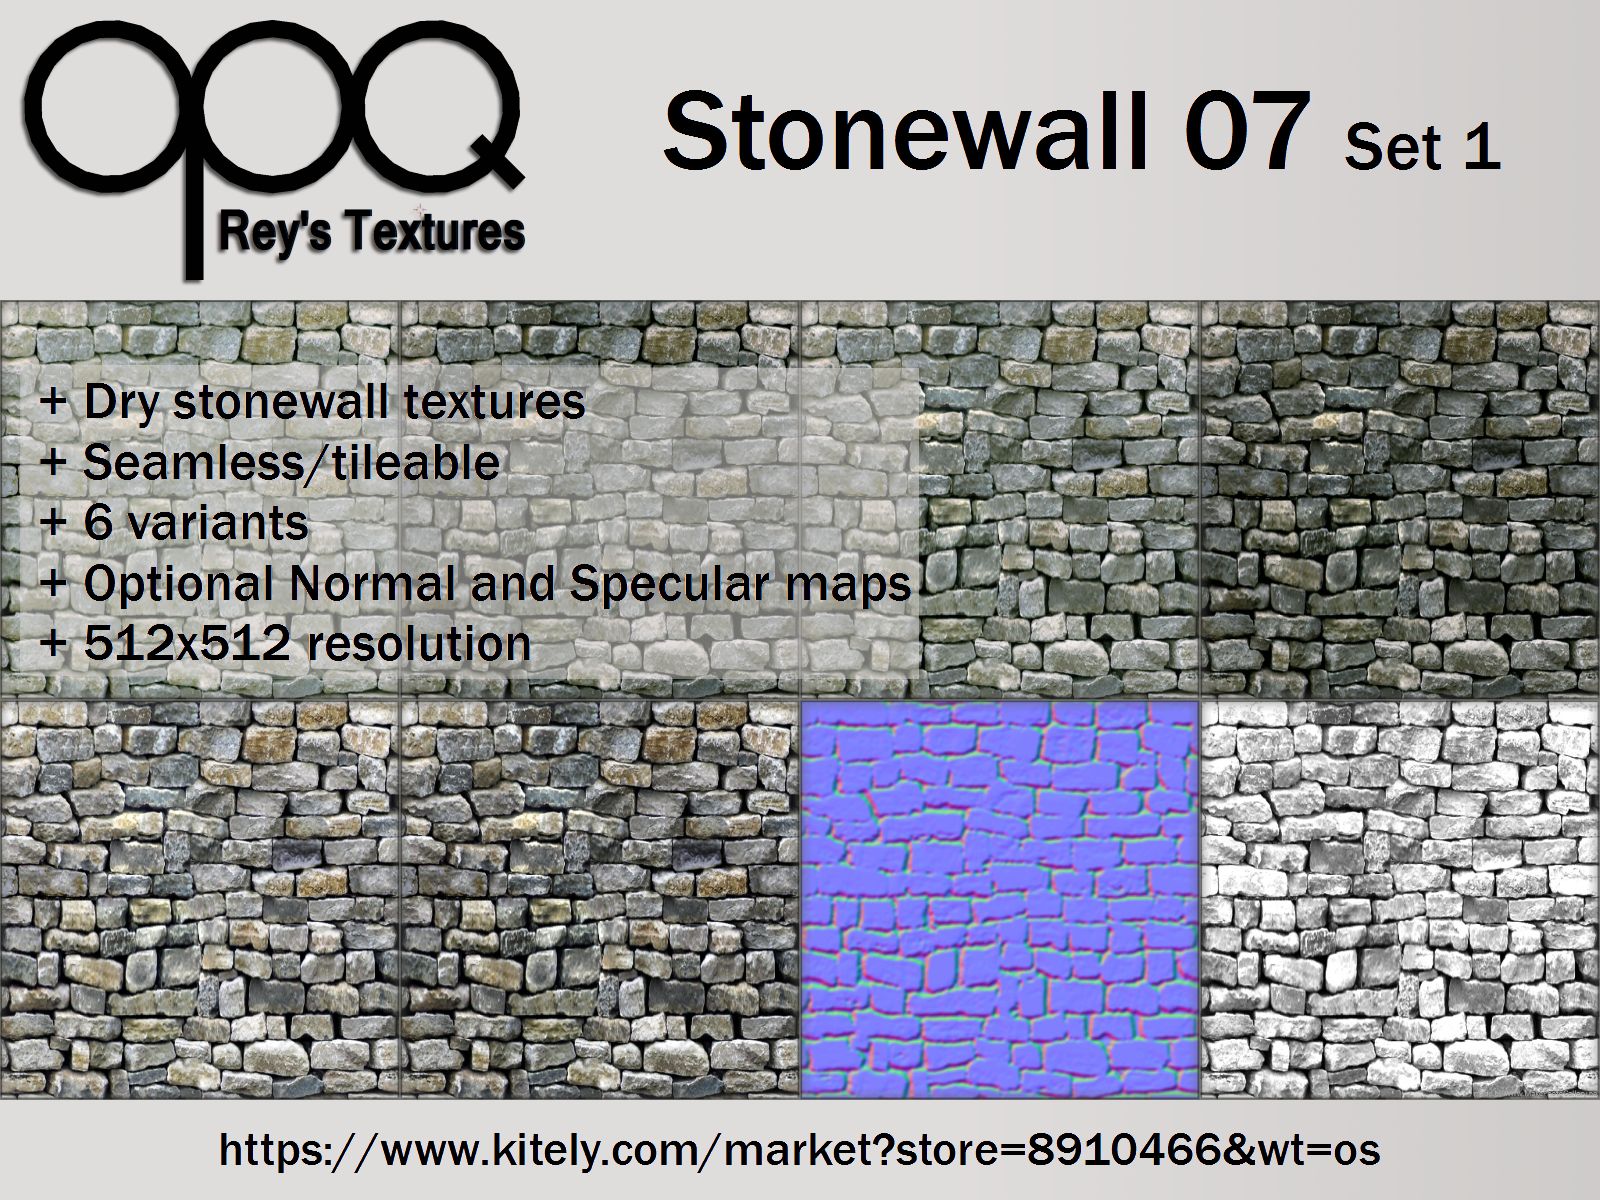 Rey's Stonewall 07 Set 1 Poster Kitely.jpg